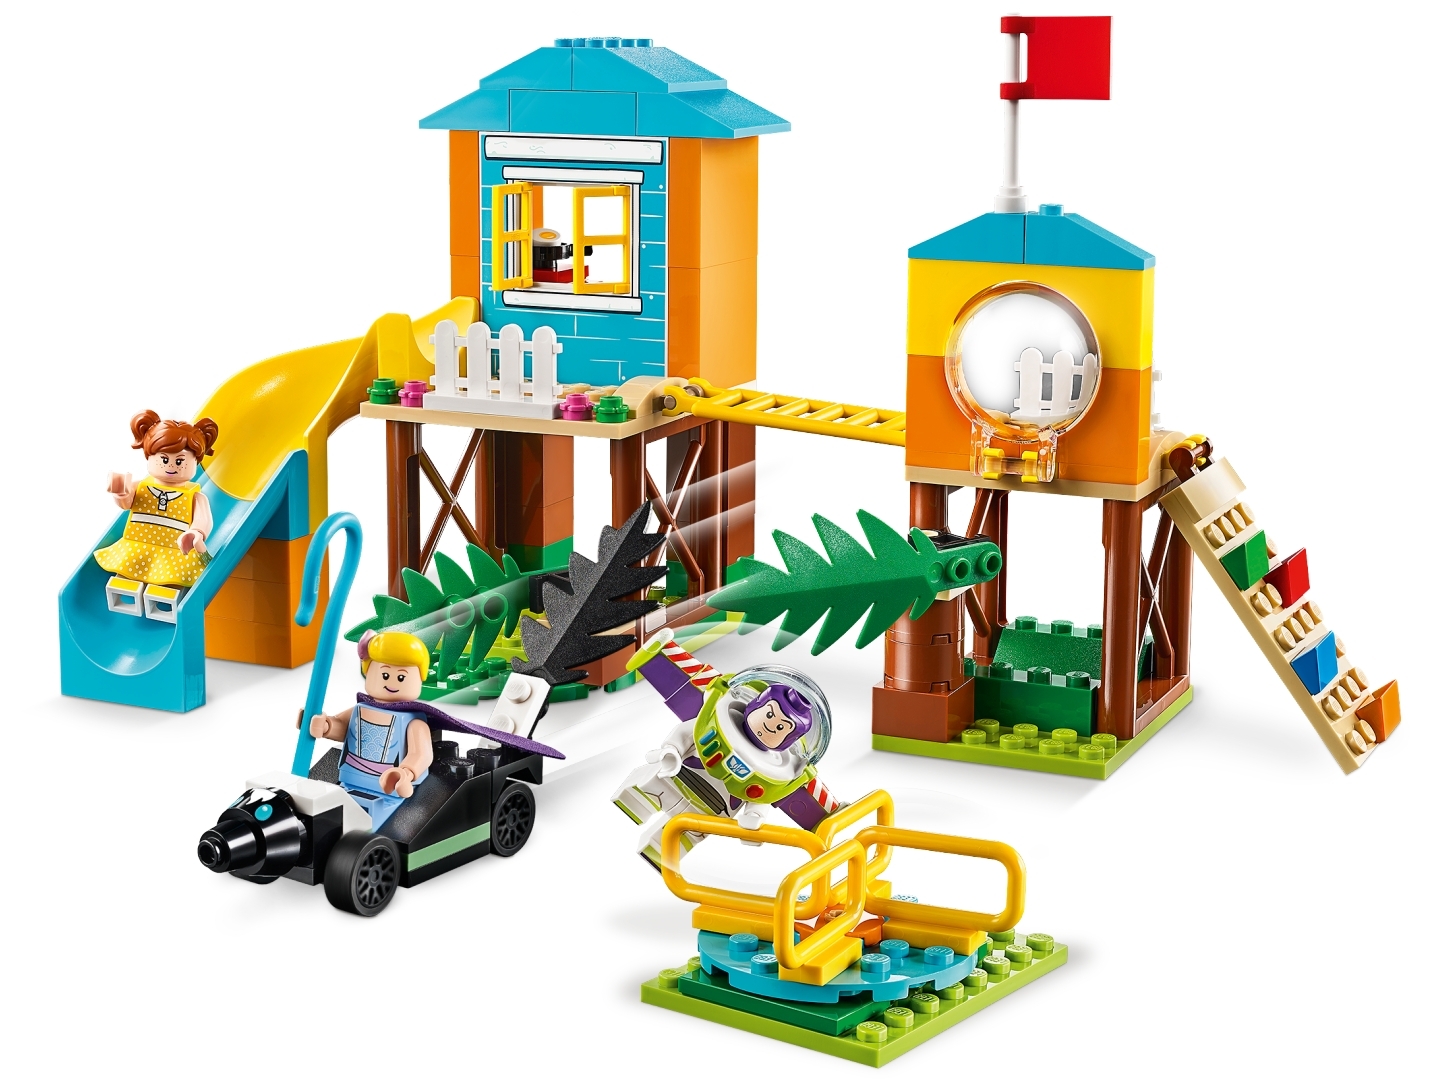 LEGO DISNEY PIXAR TOY STORY 4  Buzz & Bo Peep’s Playground Adventure Kit 10768 